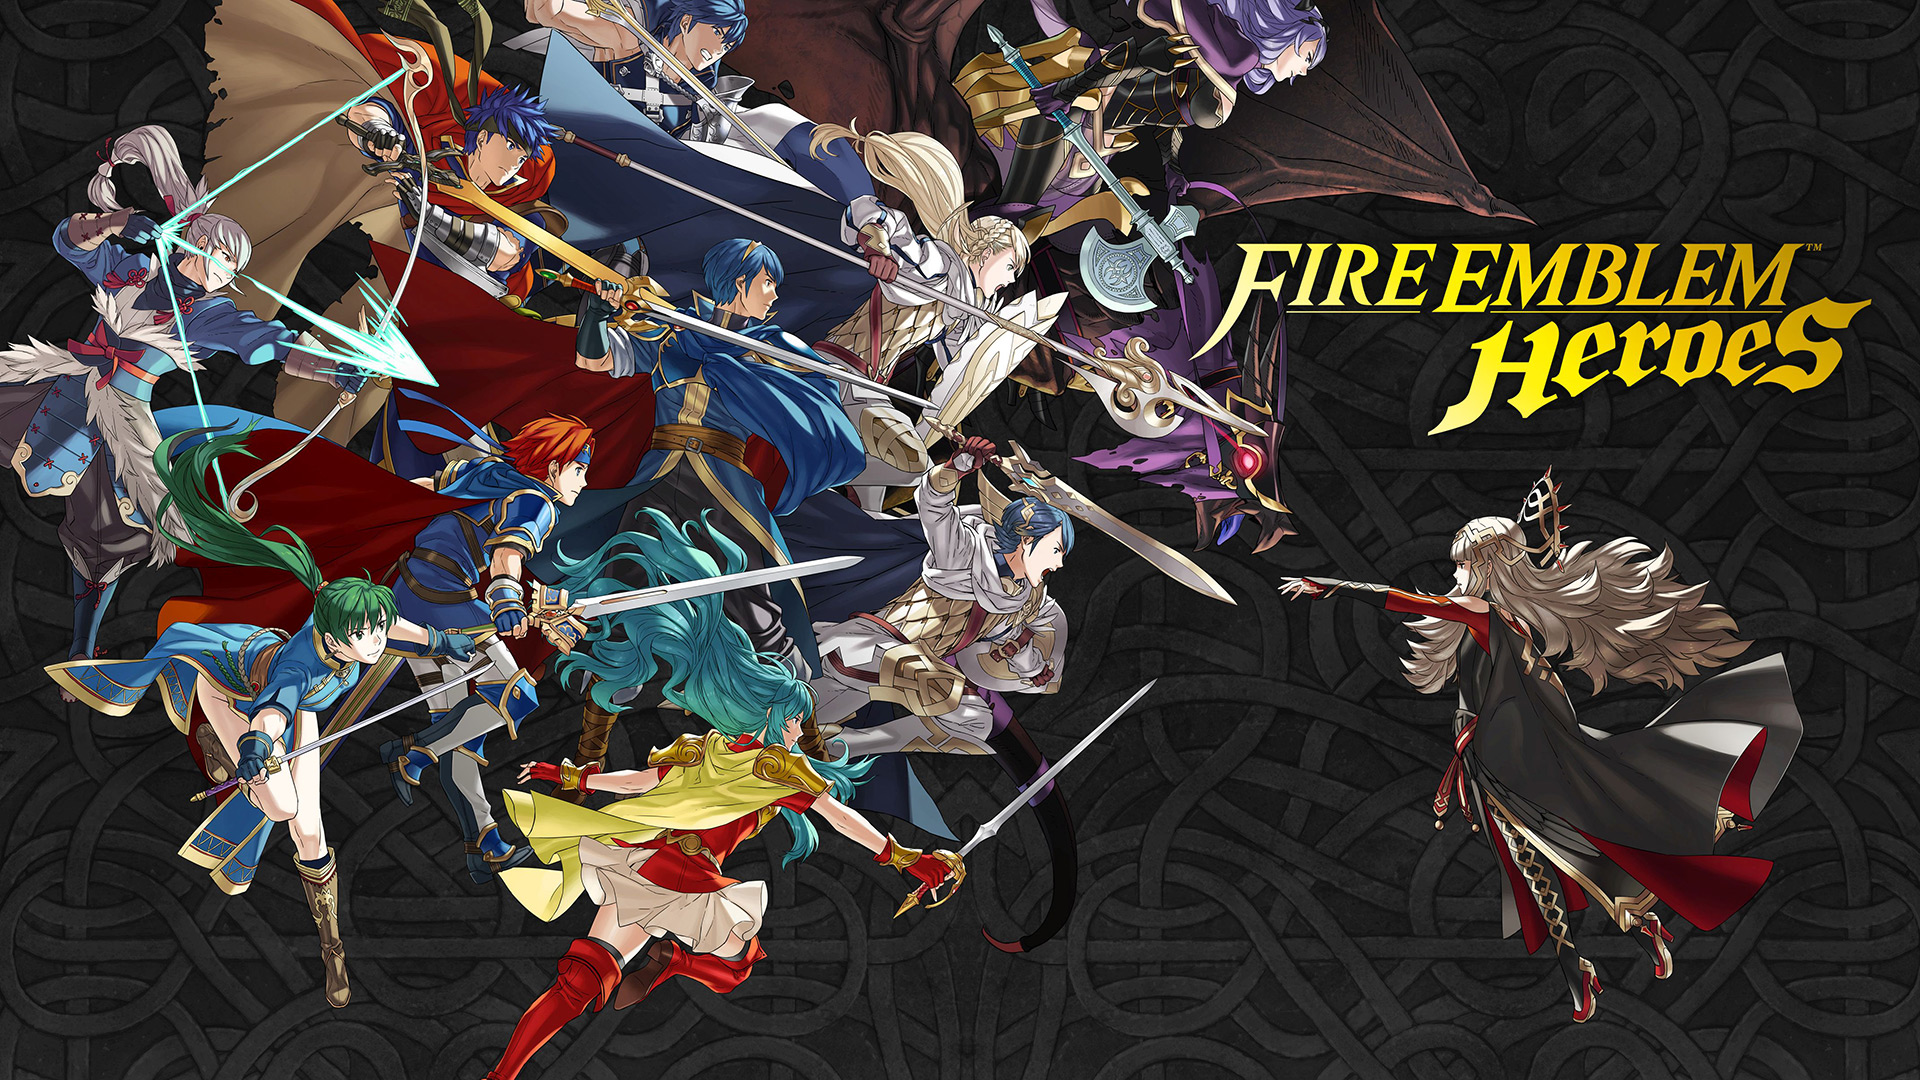 Fire Emblem Heroes dépasse le milliard de dollars de recettes grâce aux microtransactions